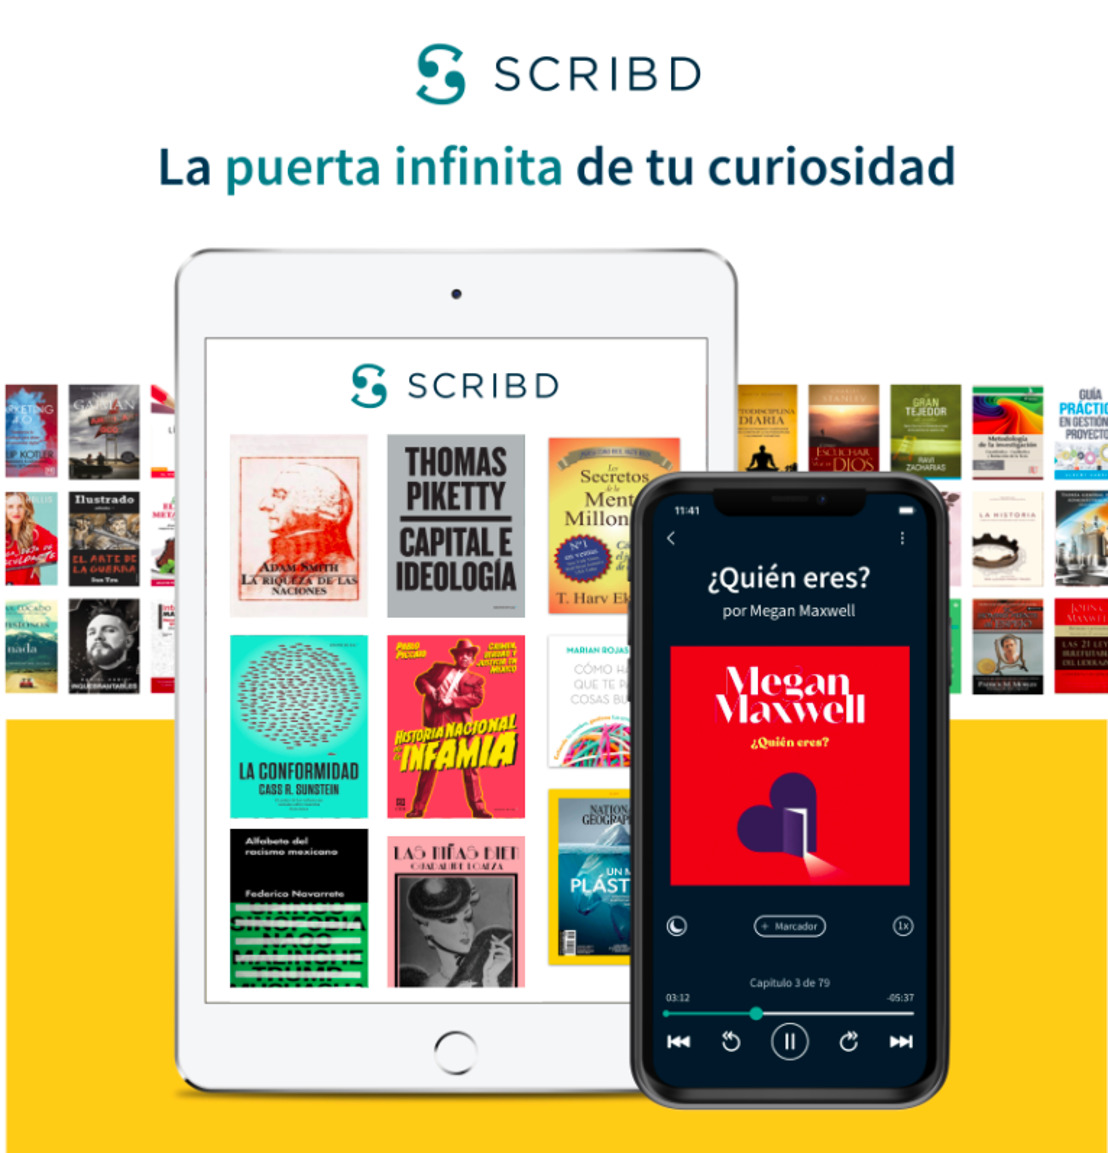 [translation] Scribd amplía su catálogo en español a más de 100.000 títulos de ebooks y audiolibros premium